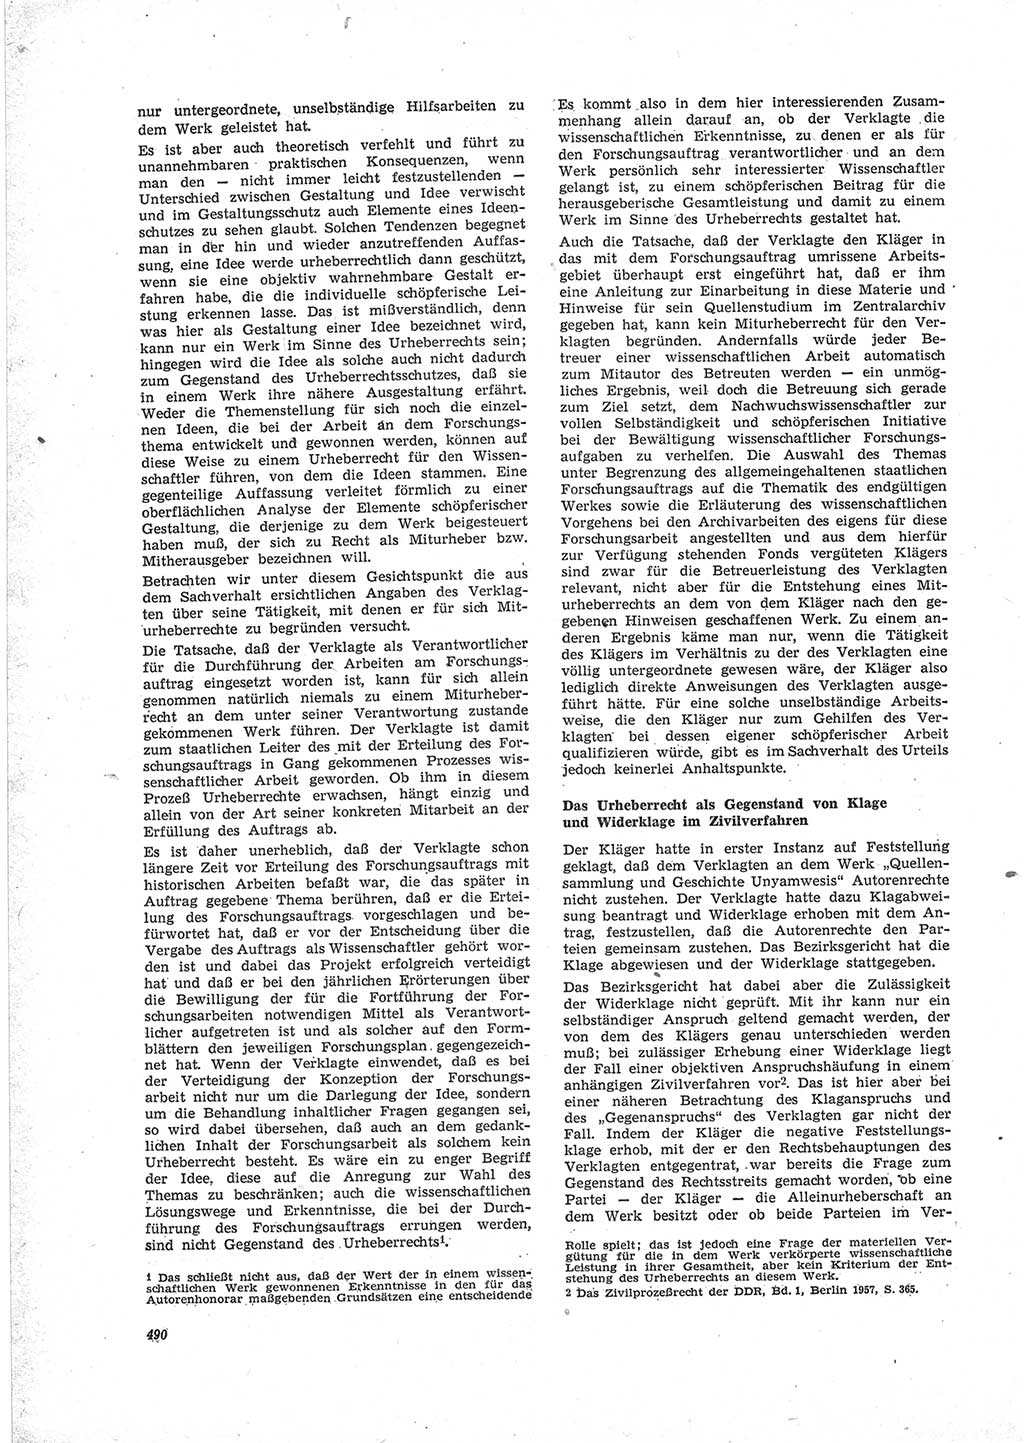 Neue Justiz (NJ), Zeitschrift für Recht und Rechtswissenschaft [Deutsche Demokratische Republik (DDR)], 23. Jahrgang 1969, Seite 490 (NJ DDR 1969, S. 490)